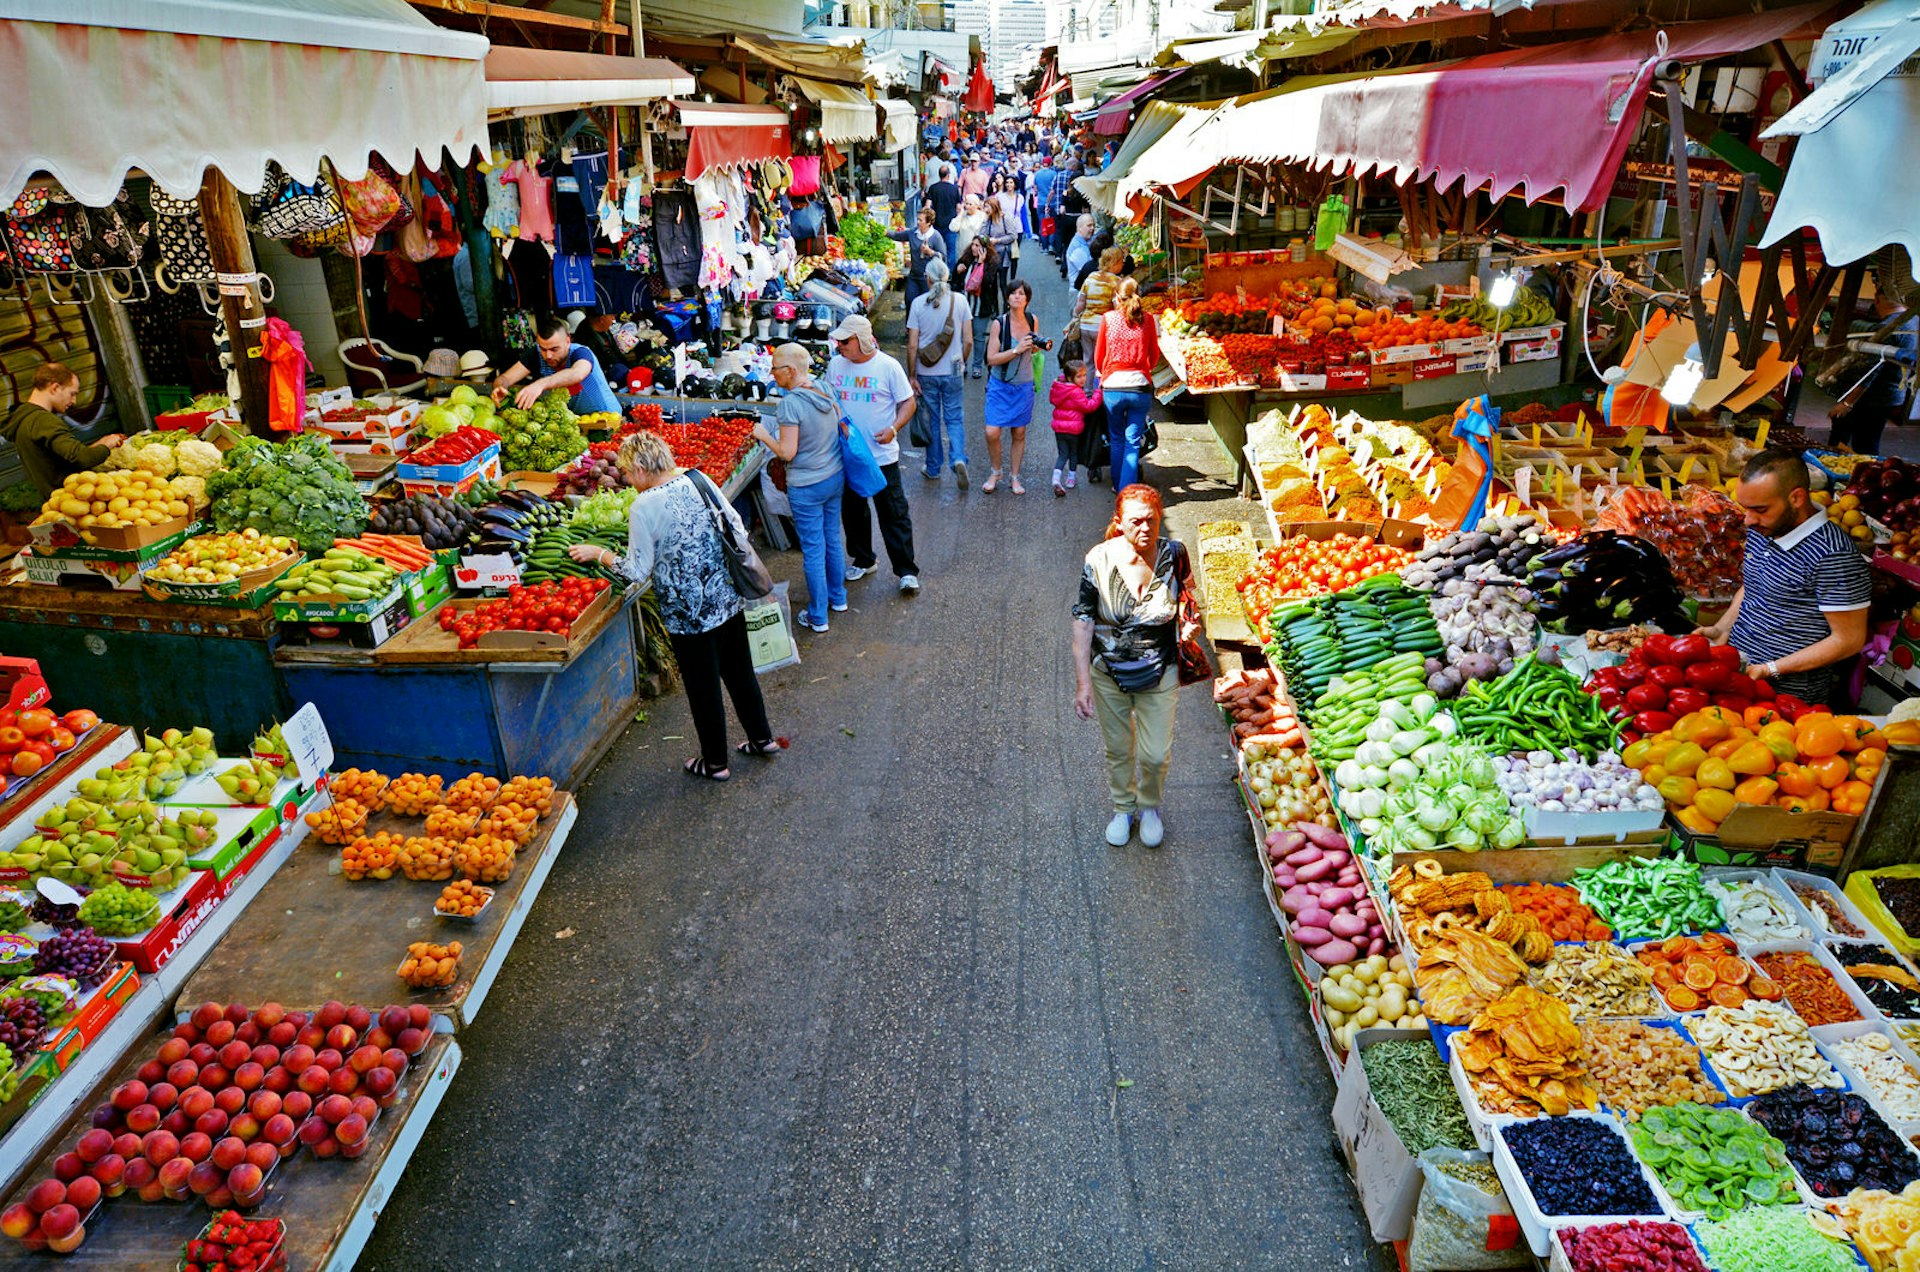 Shoppers at Carmel Market in Tel Aviv, Israel. Image by ChameleonsEye / Shutterstock